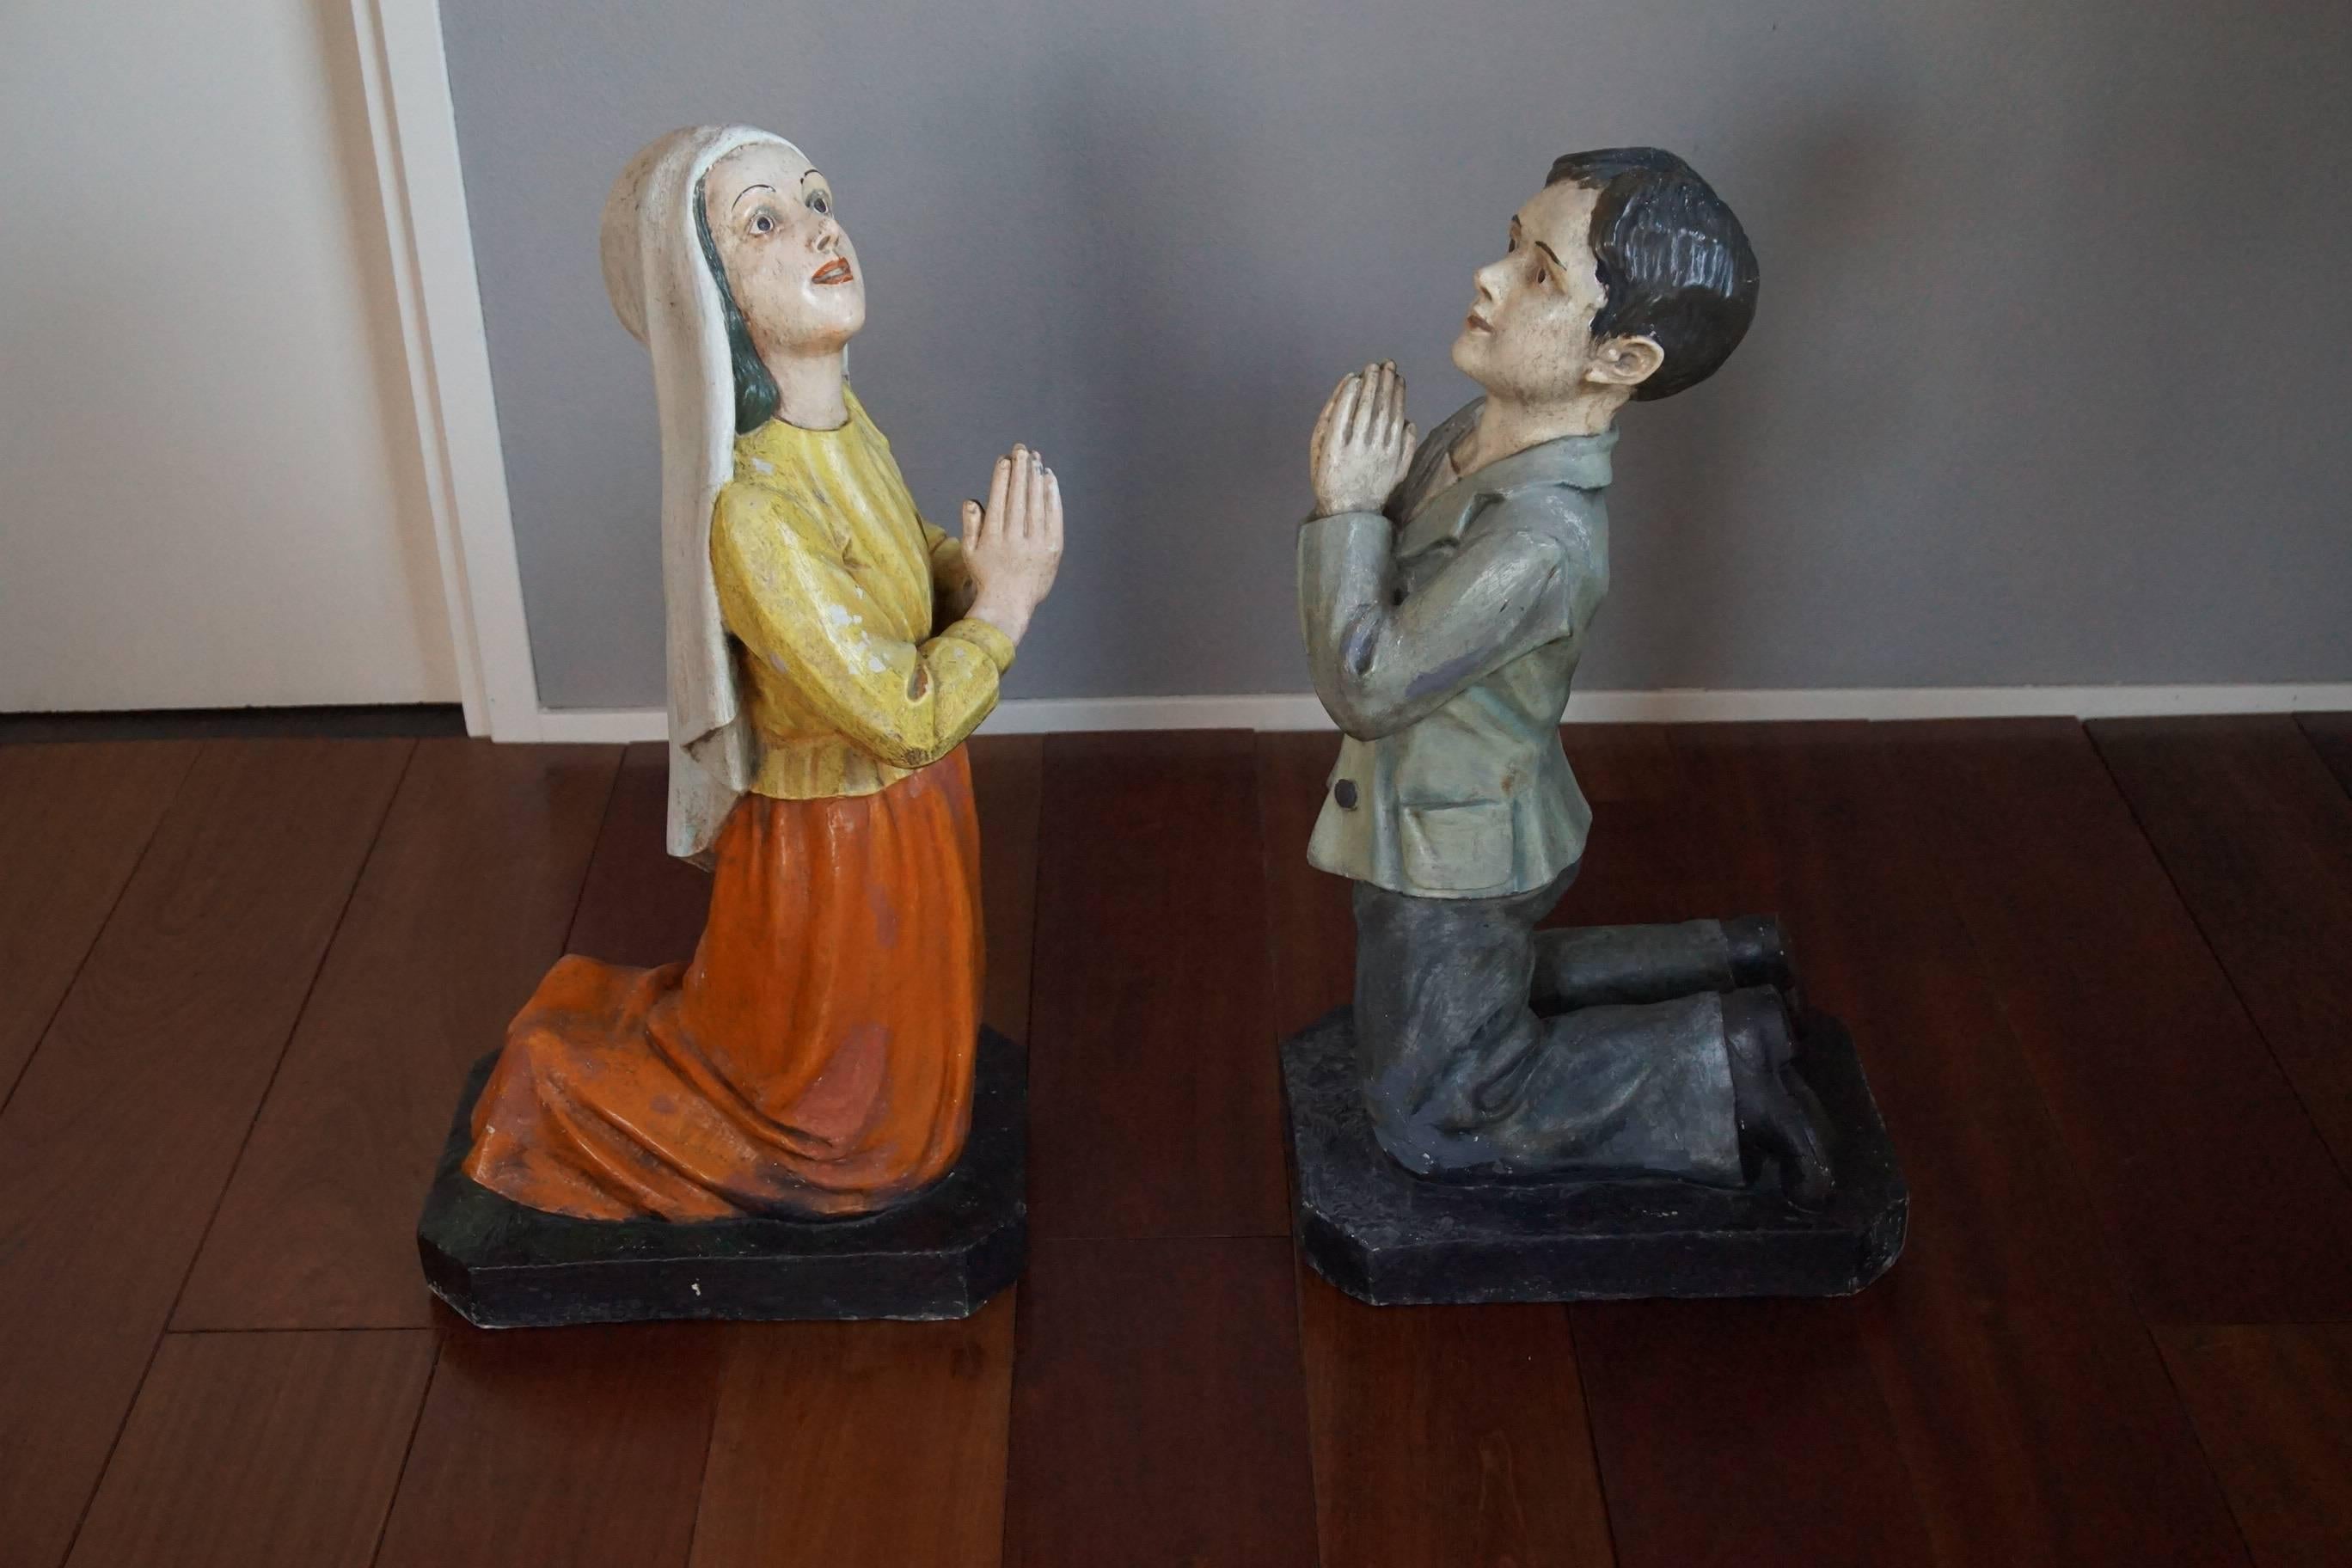 European Devotional Statues / Religious Sculptures of St. Francisco de Jesus Marto & More For Sale